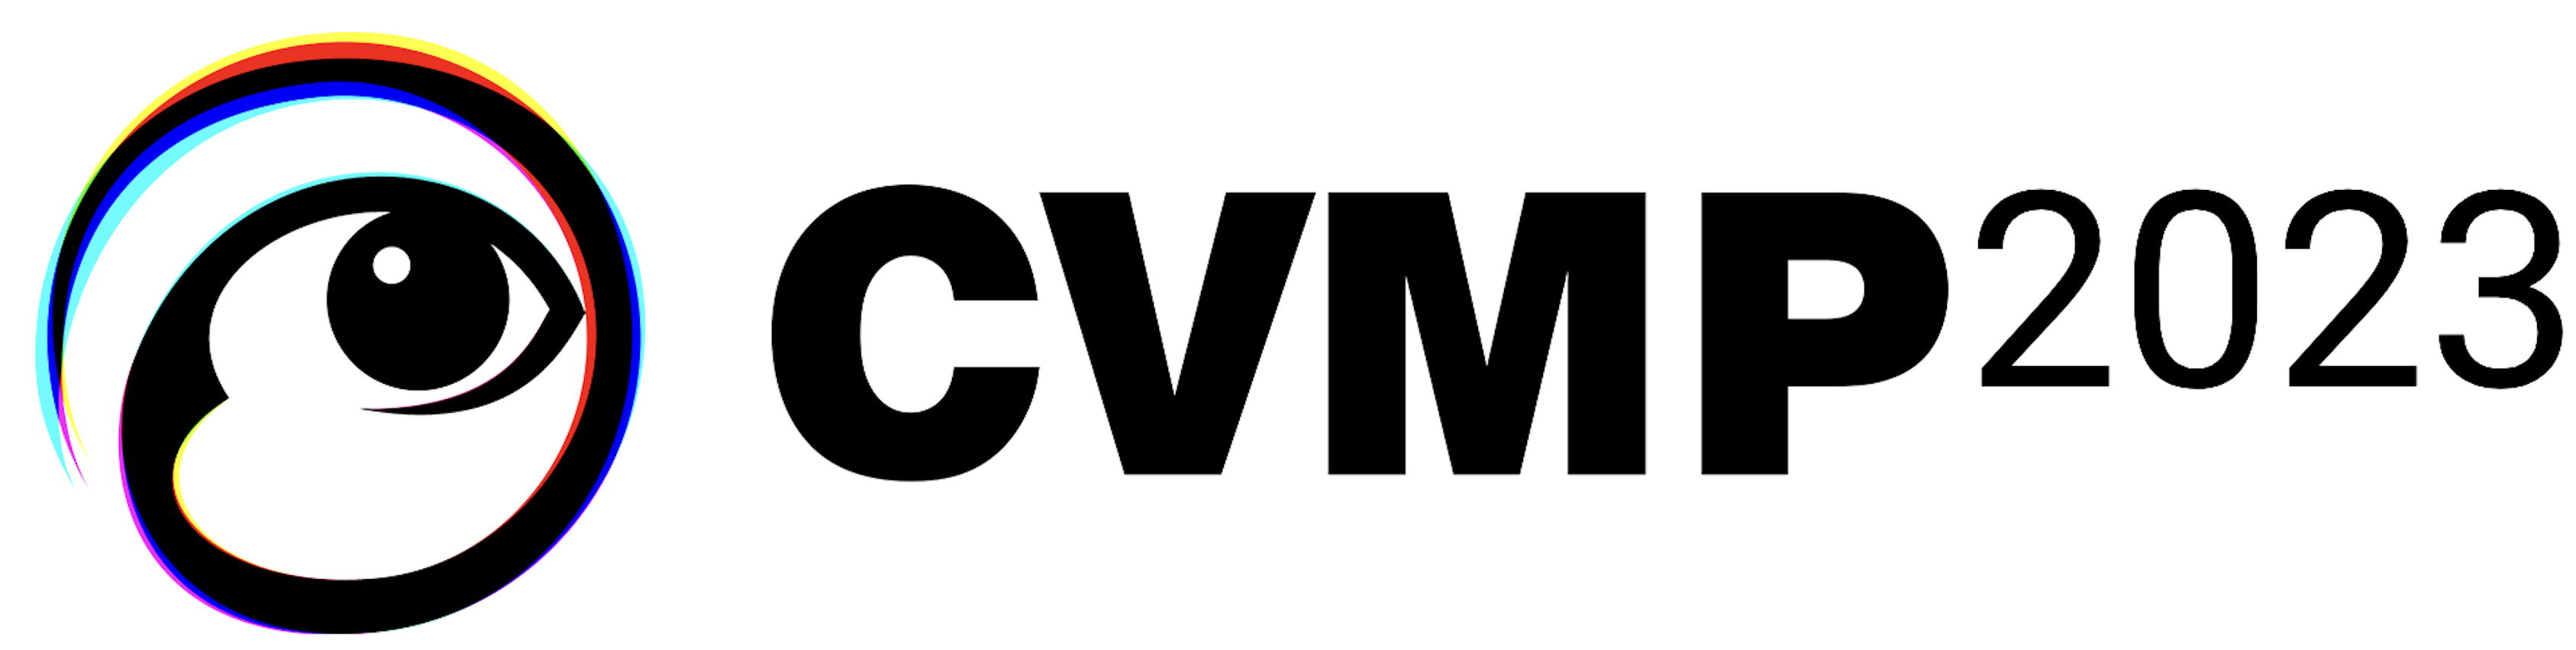 CVMP 2023 logo